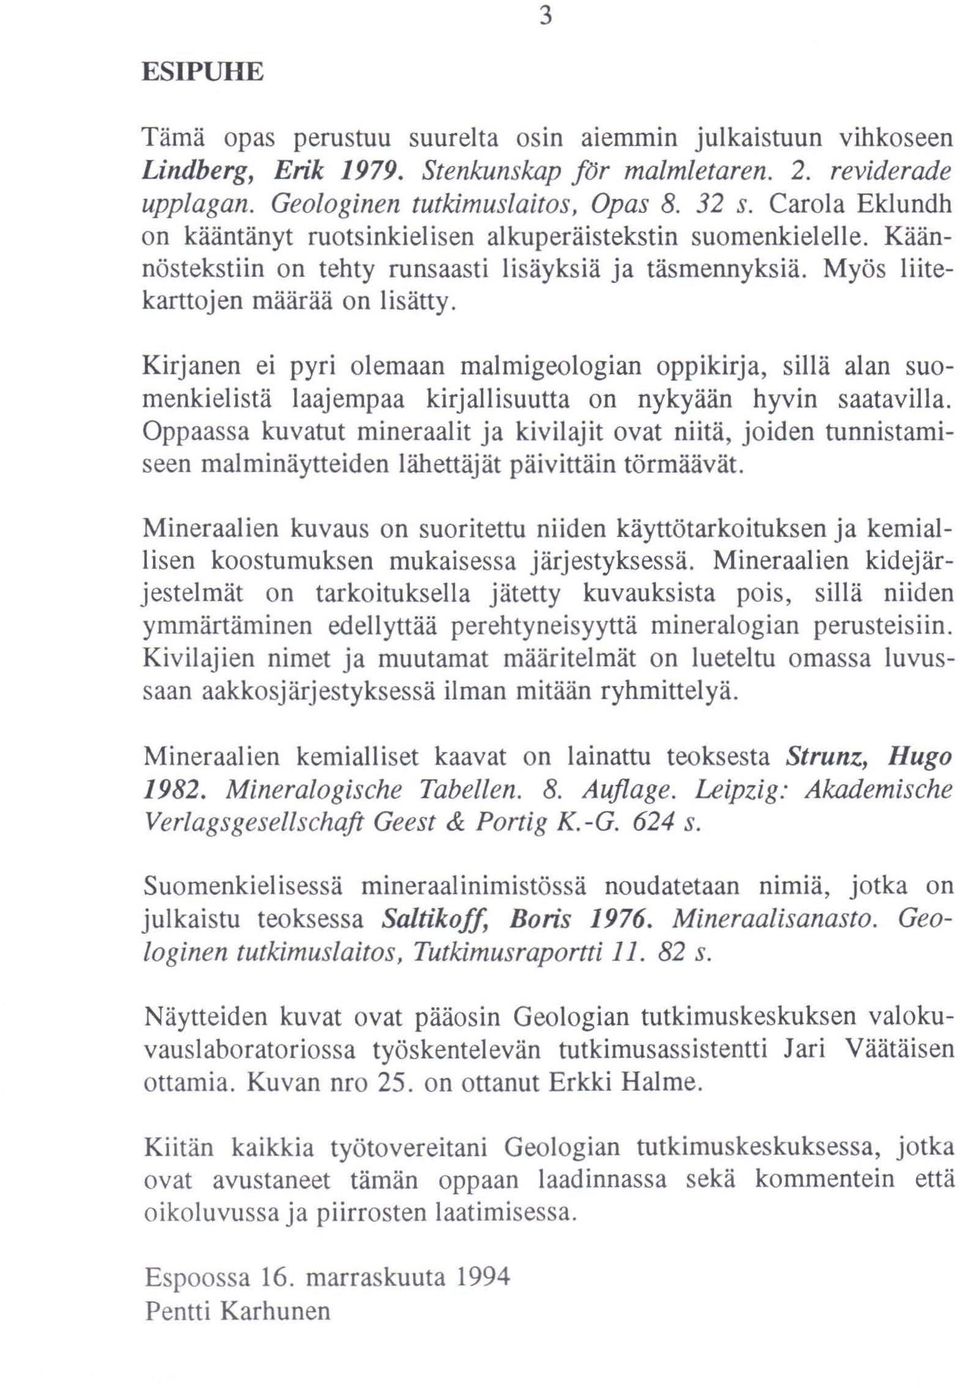 Kirjanen ei pyri olemaan malmigeologian oppikirja, sillä alan suomenkielistä laajempaa kirjallisuutta on nykyään hyvin saatavilla.